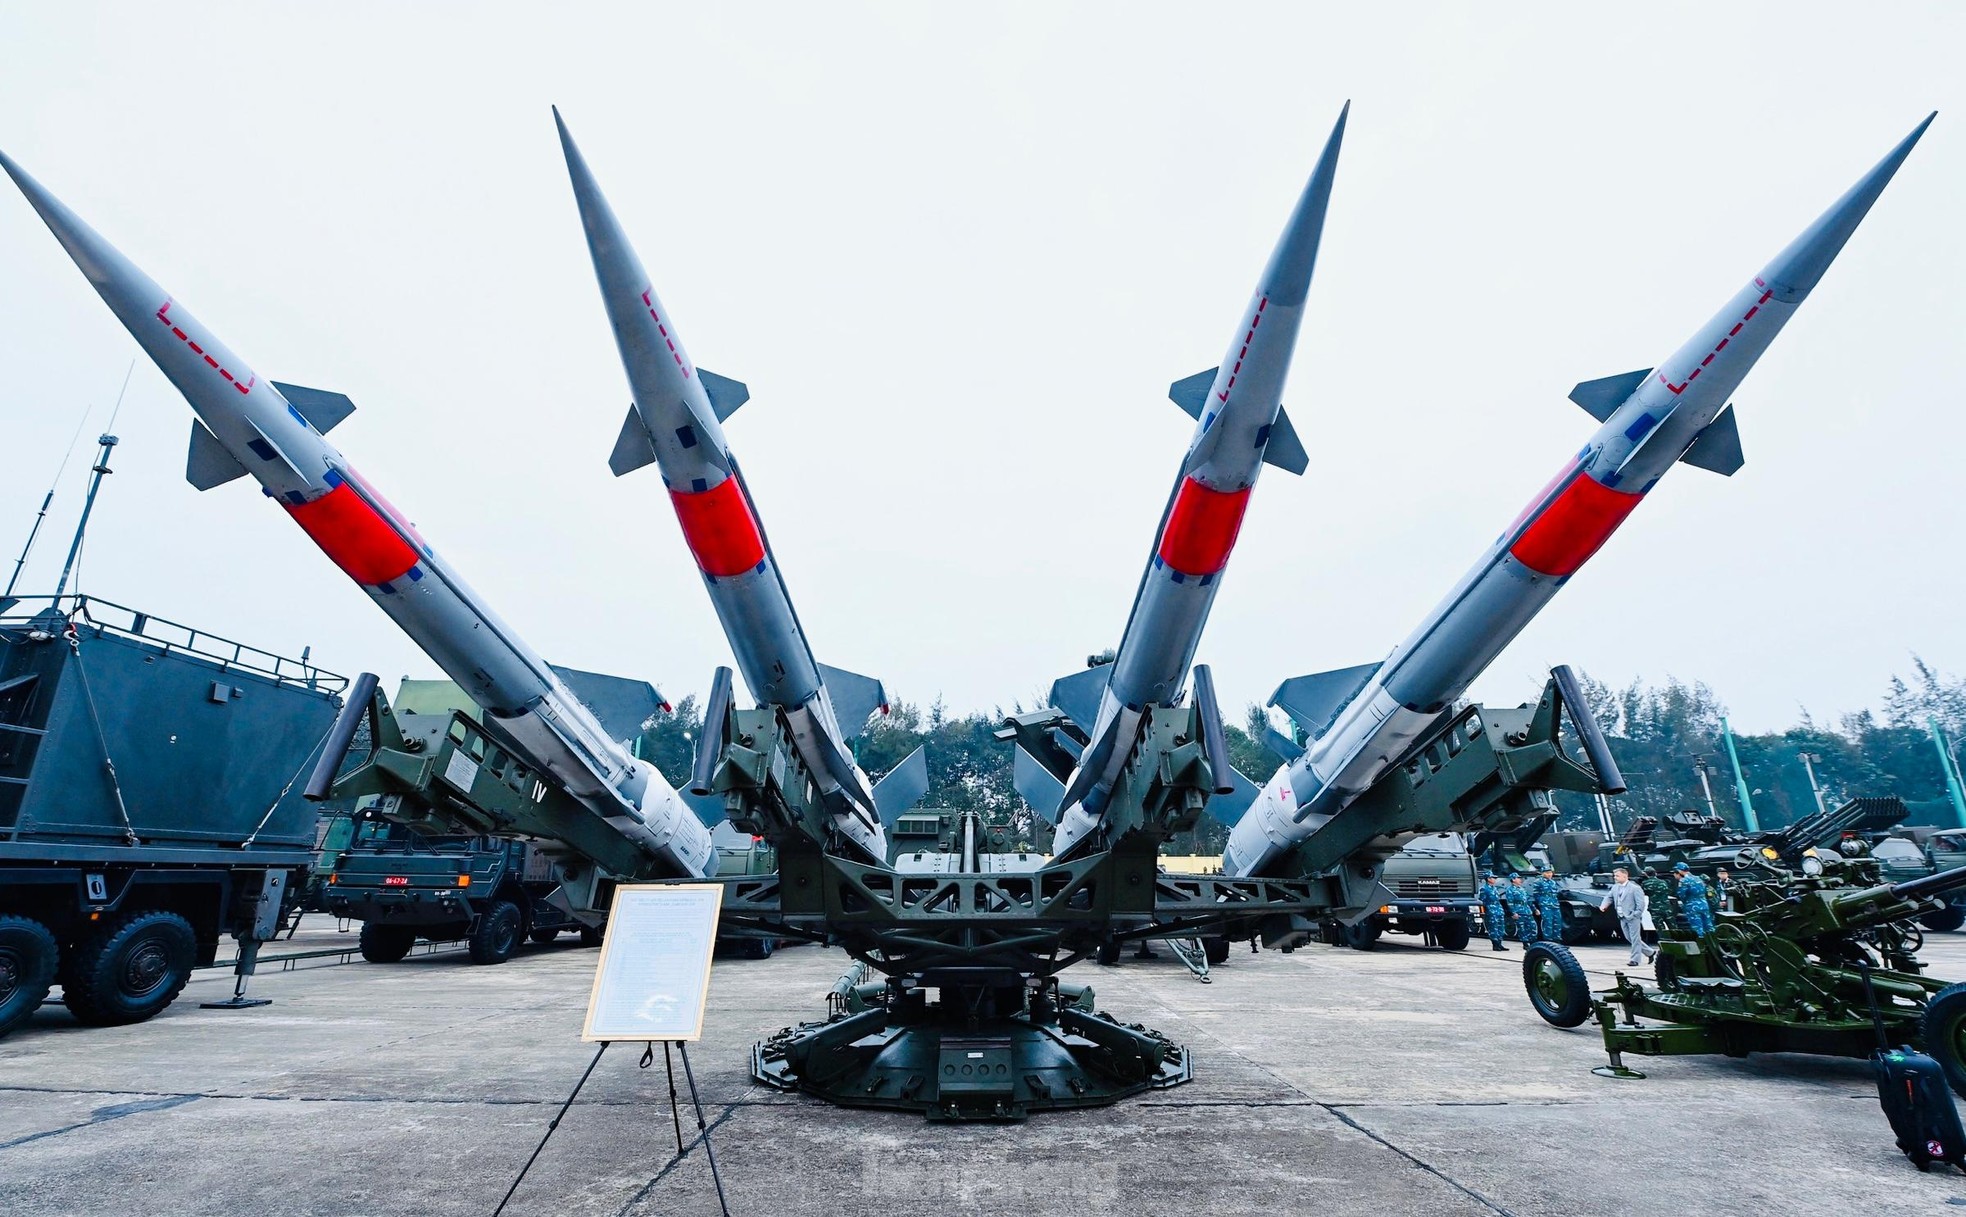 Việt Nam chủ trương phát triển công nghiệp quốc phòng đạt trình độ tiên tiến, hiện đại, đủ năng lực sản xuất vũ khí chiến lược - Ảnh 7.